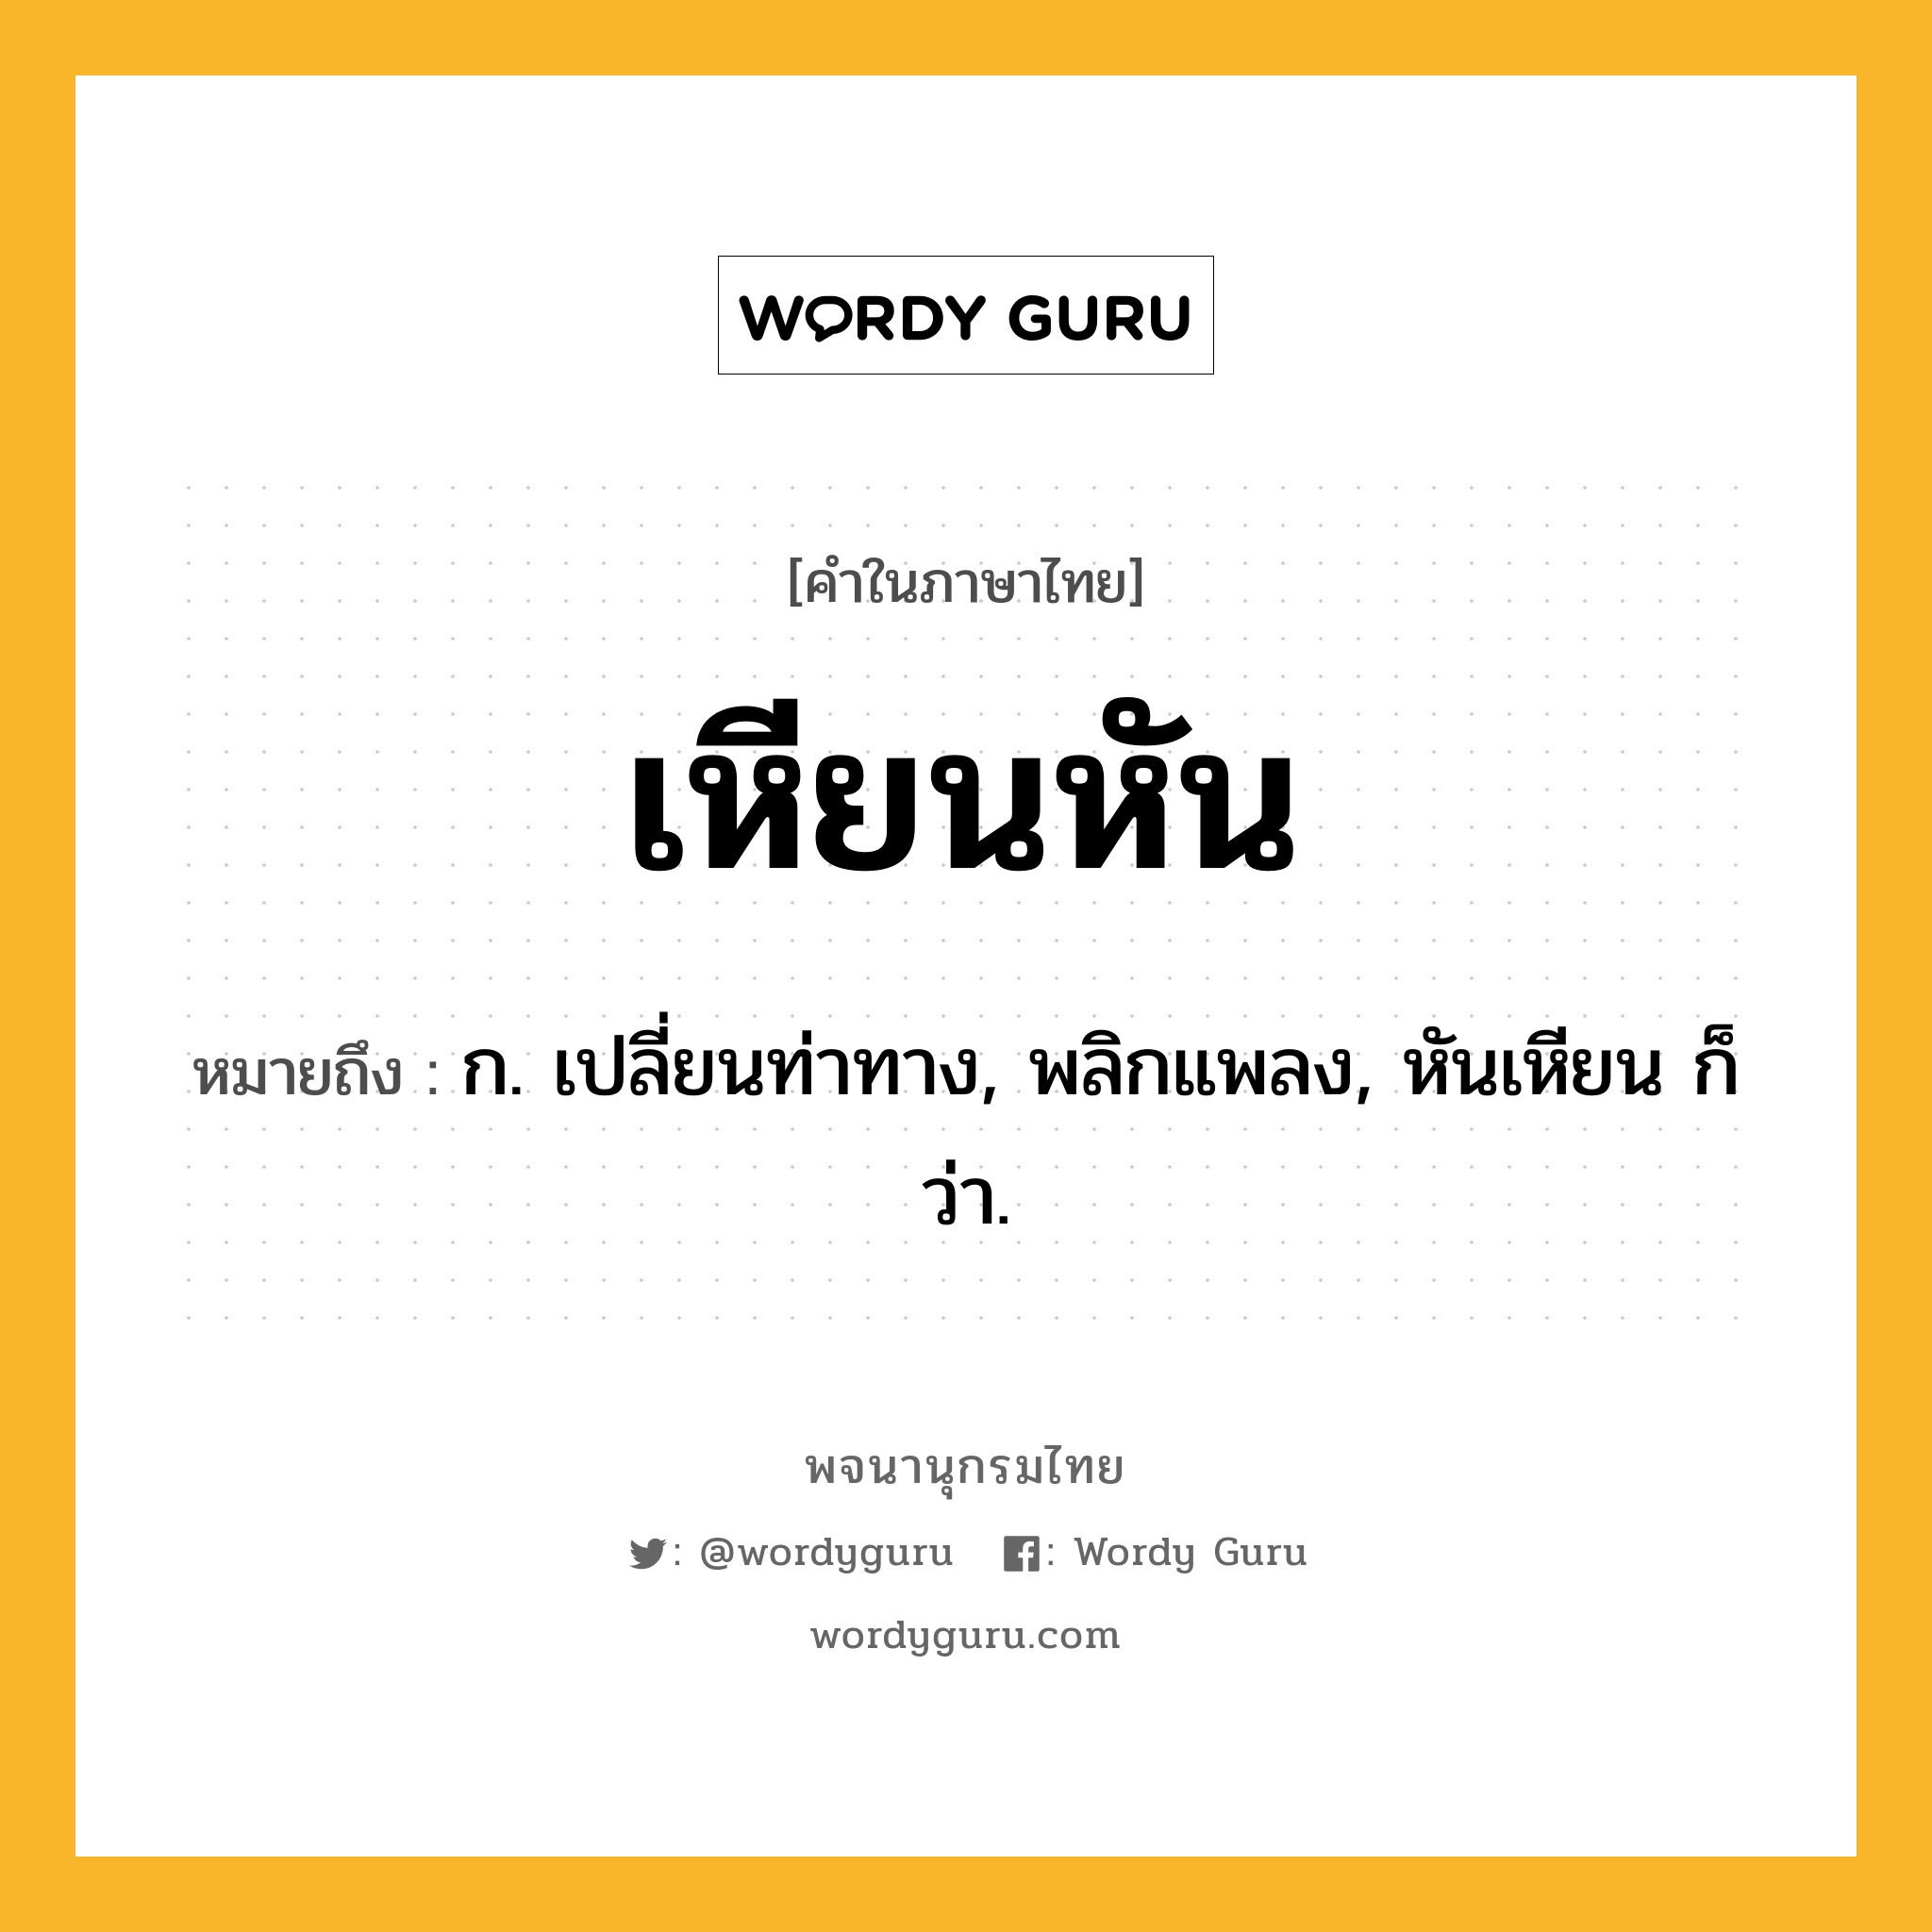 เหียนหัน ความหมาย หมายถึงอะไร?, คำในภาษาไทย เหียนหัน หมายถึง ก. เปลี่ยนท่าทาง, พลิกแพลง, หันเหียน ก็ว่า.